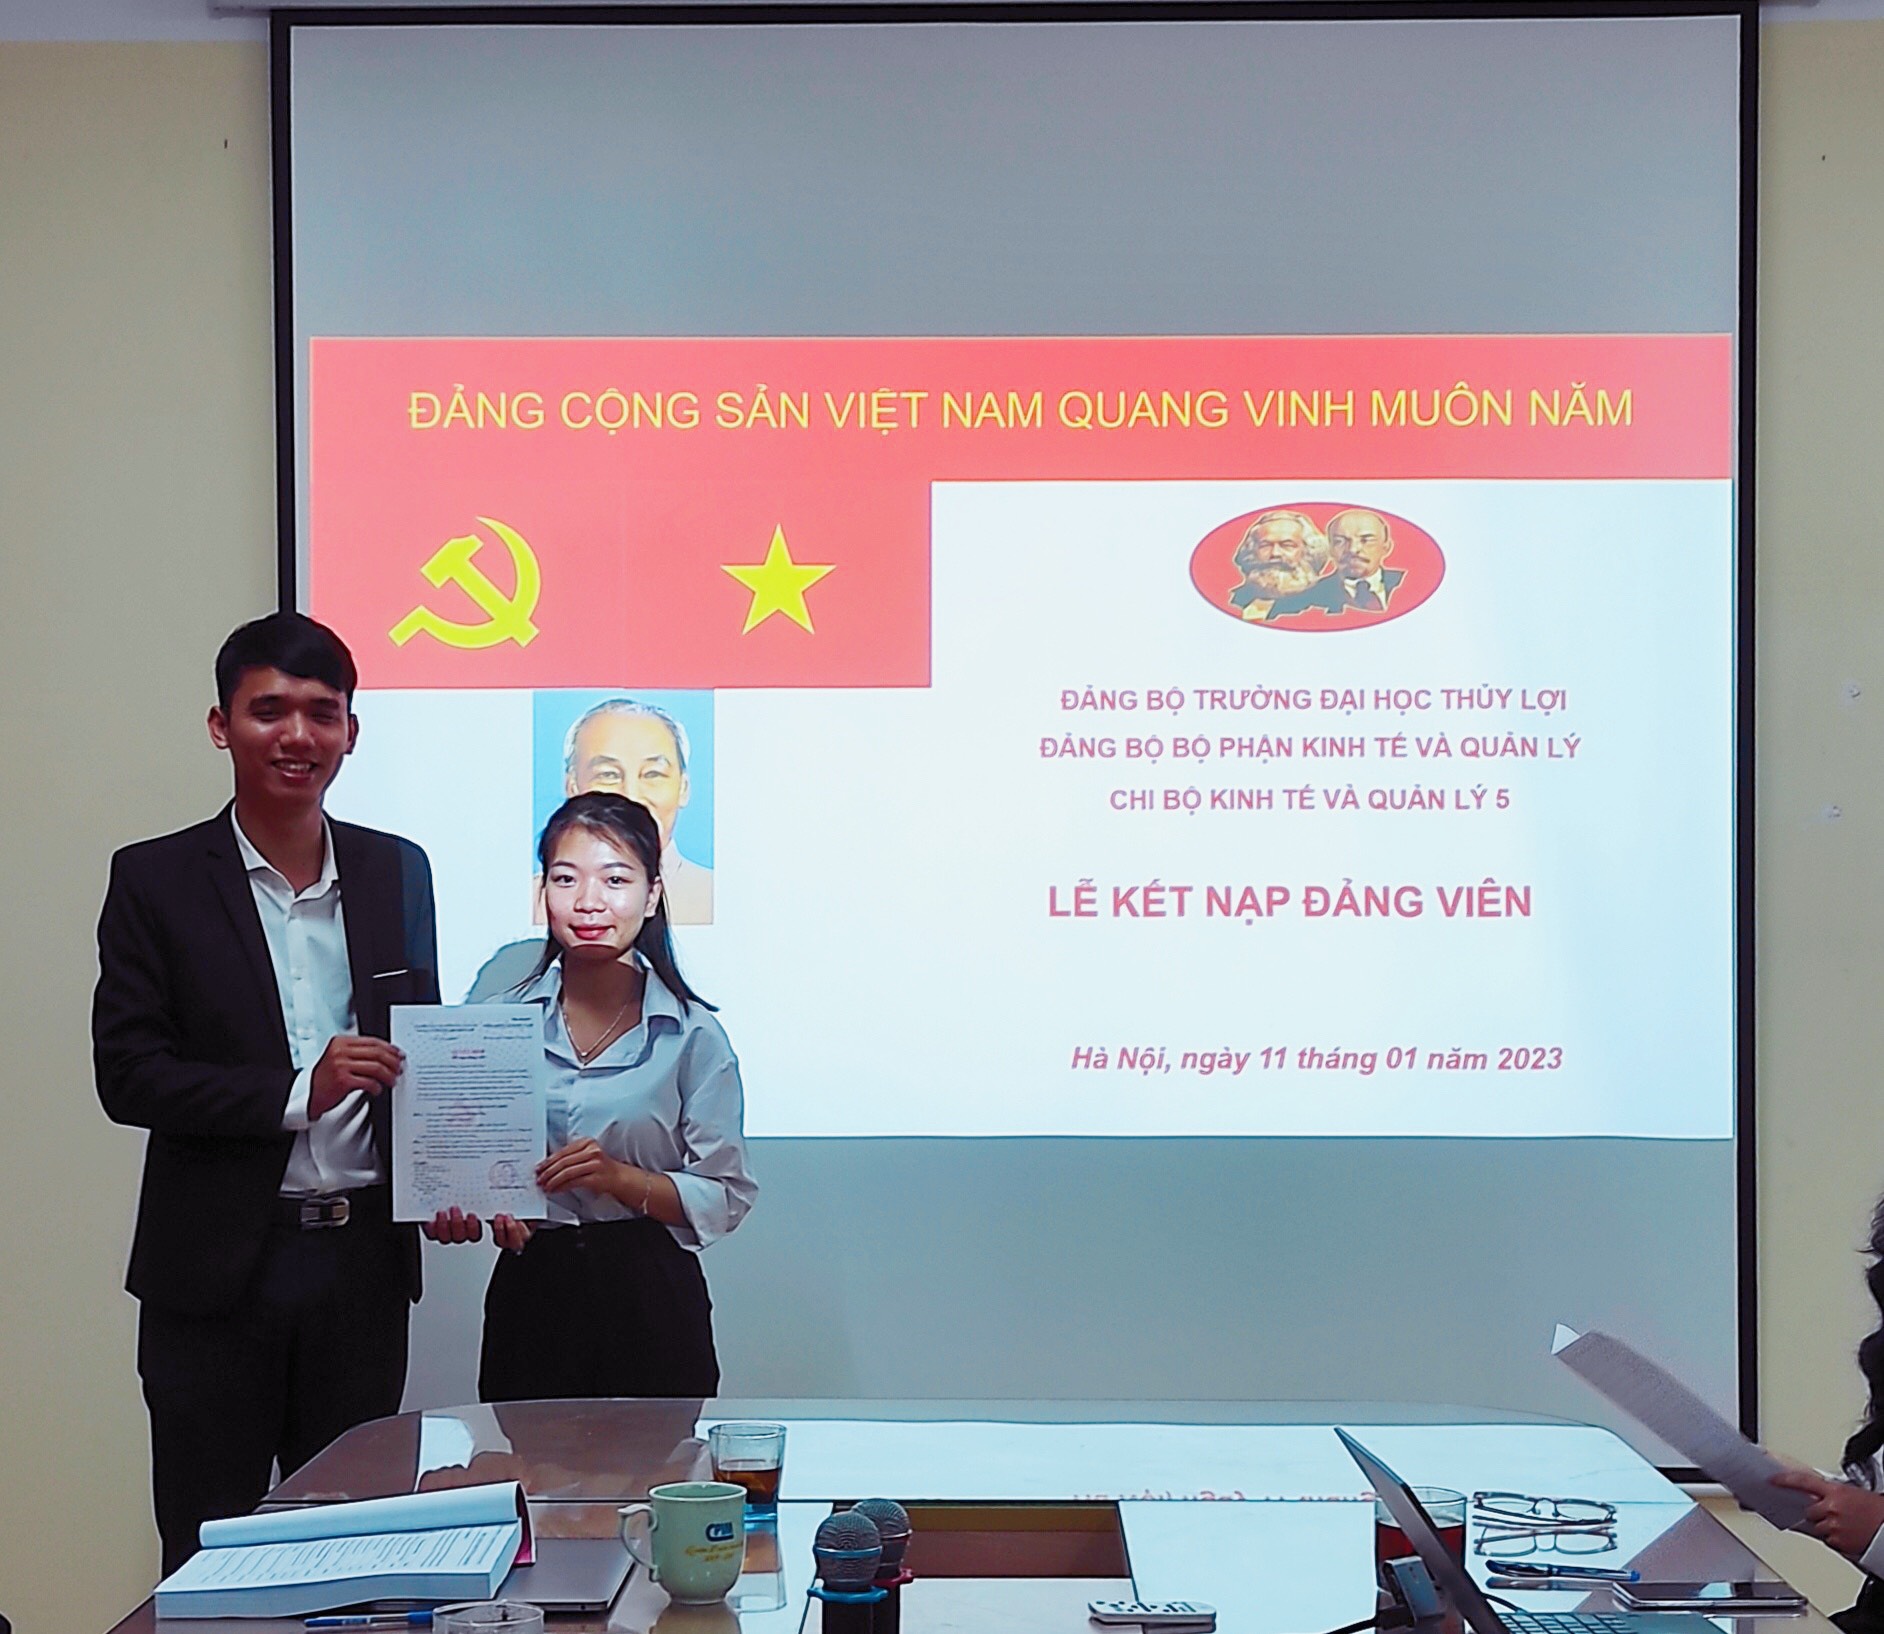 Đang học năm cuối, nữ sinh Quảng Ninh được tuyển thẳng học Thạc sĩ - Ảnh 3.